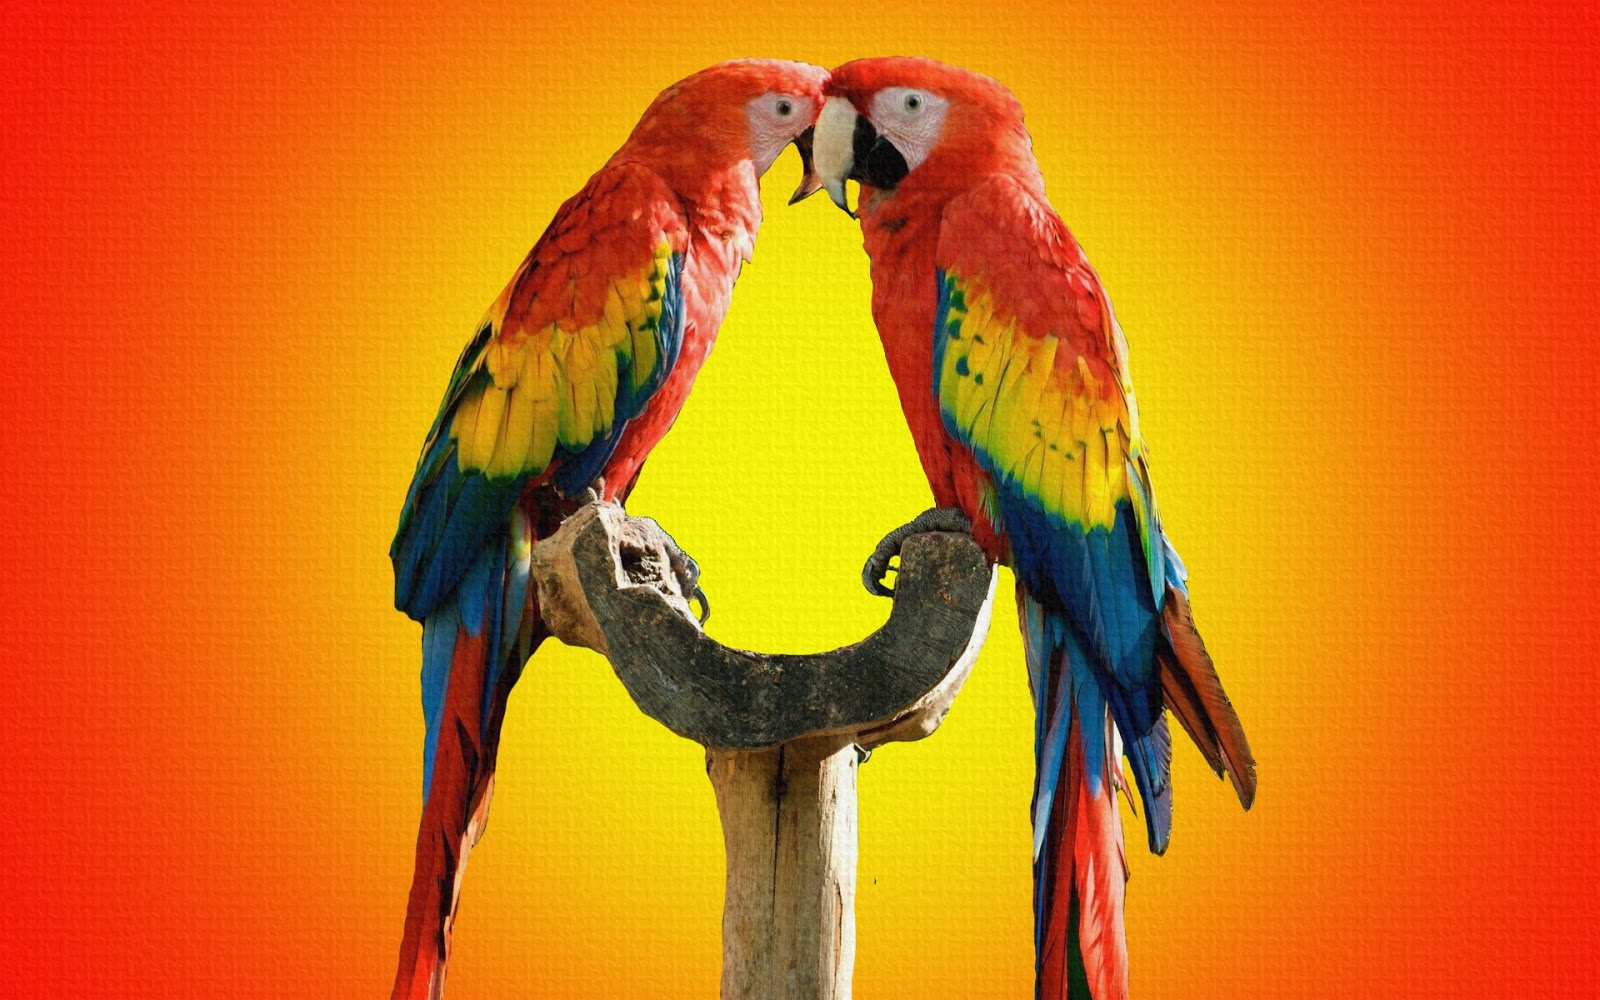 amore uccelli wallpaper hd,uccello,ara,pappagallo,pappagallino,parrocchetto